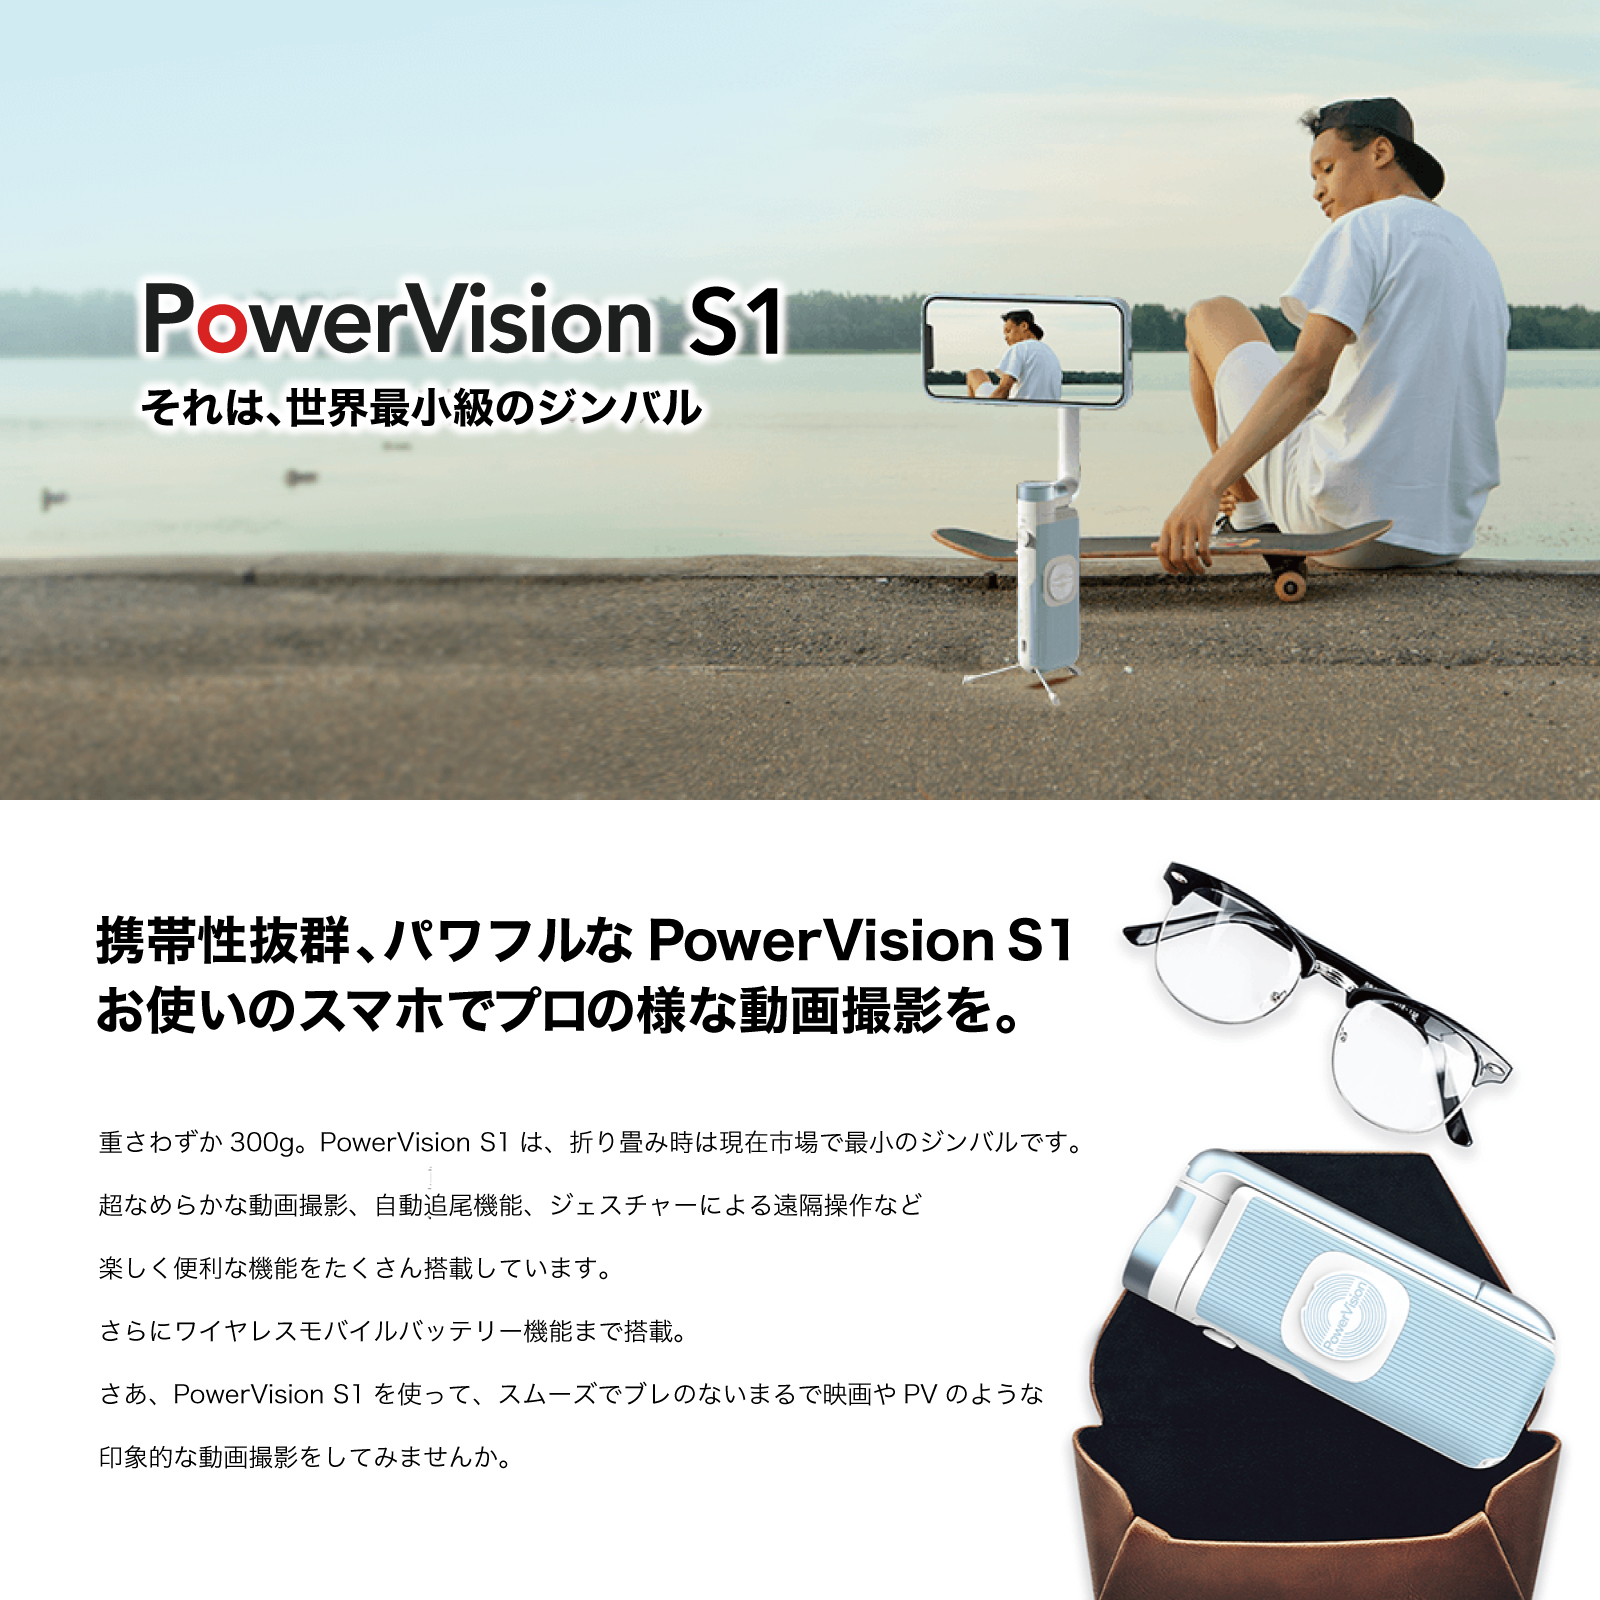 【色: モダンブラック】PowerVision スマートフォン用ジンバルカメラ